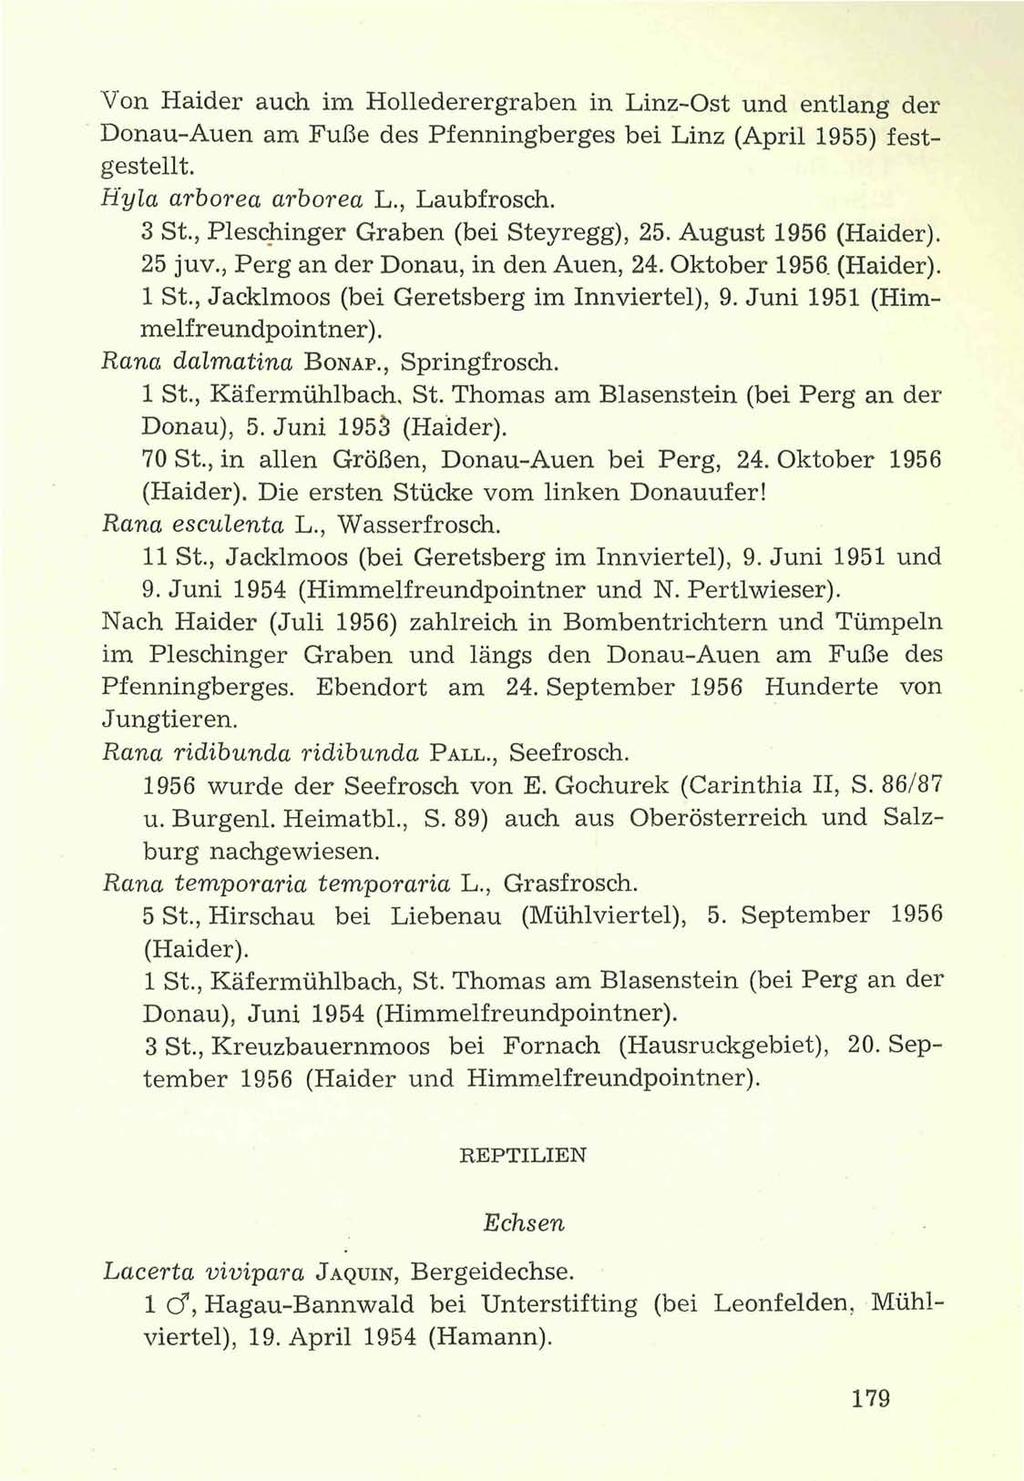 Von Haider auch im Hollederergraben in Linz-Ost und entlang der Donau-Auen am Fuße des Pfenningberges bei Linz (April 1955) festgestellt. Hyla arborea arborea L., Laubfrosch. 3 St.